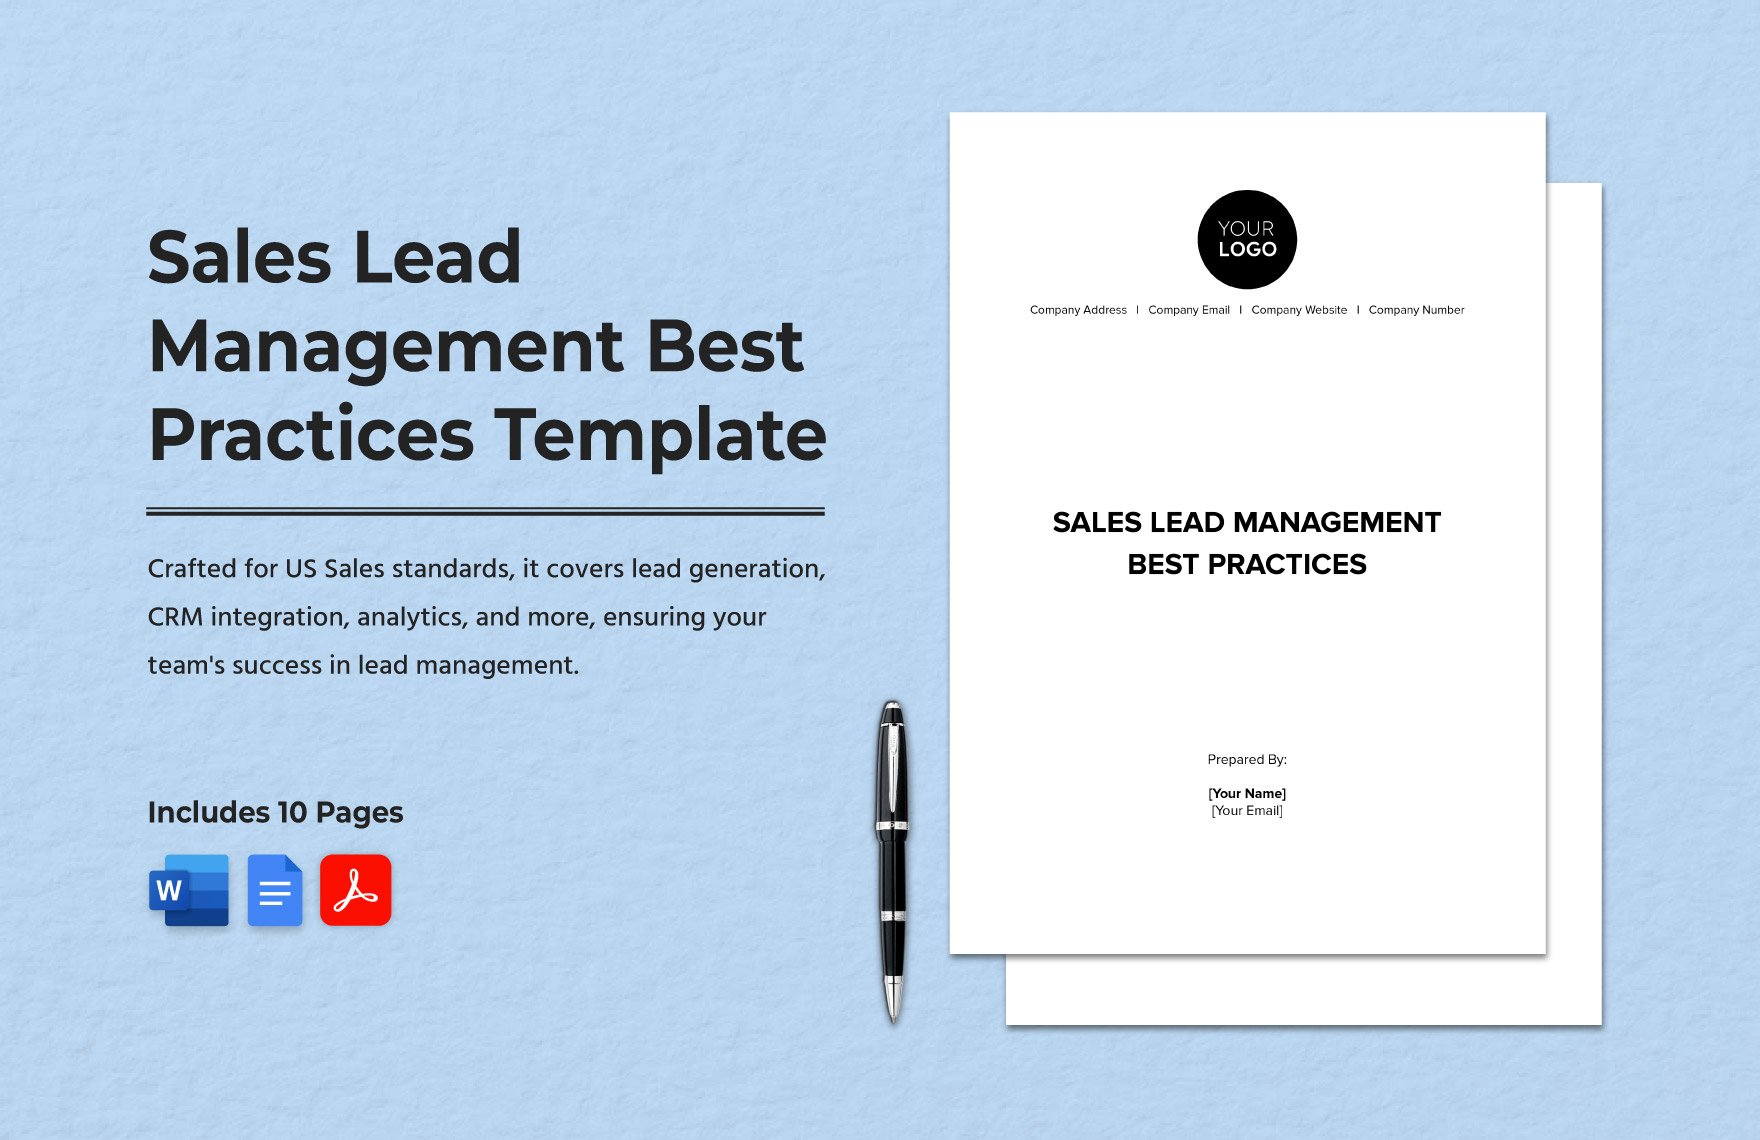 Sales Lead Management Best Practices Template